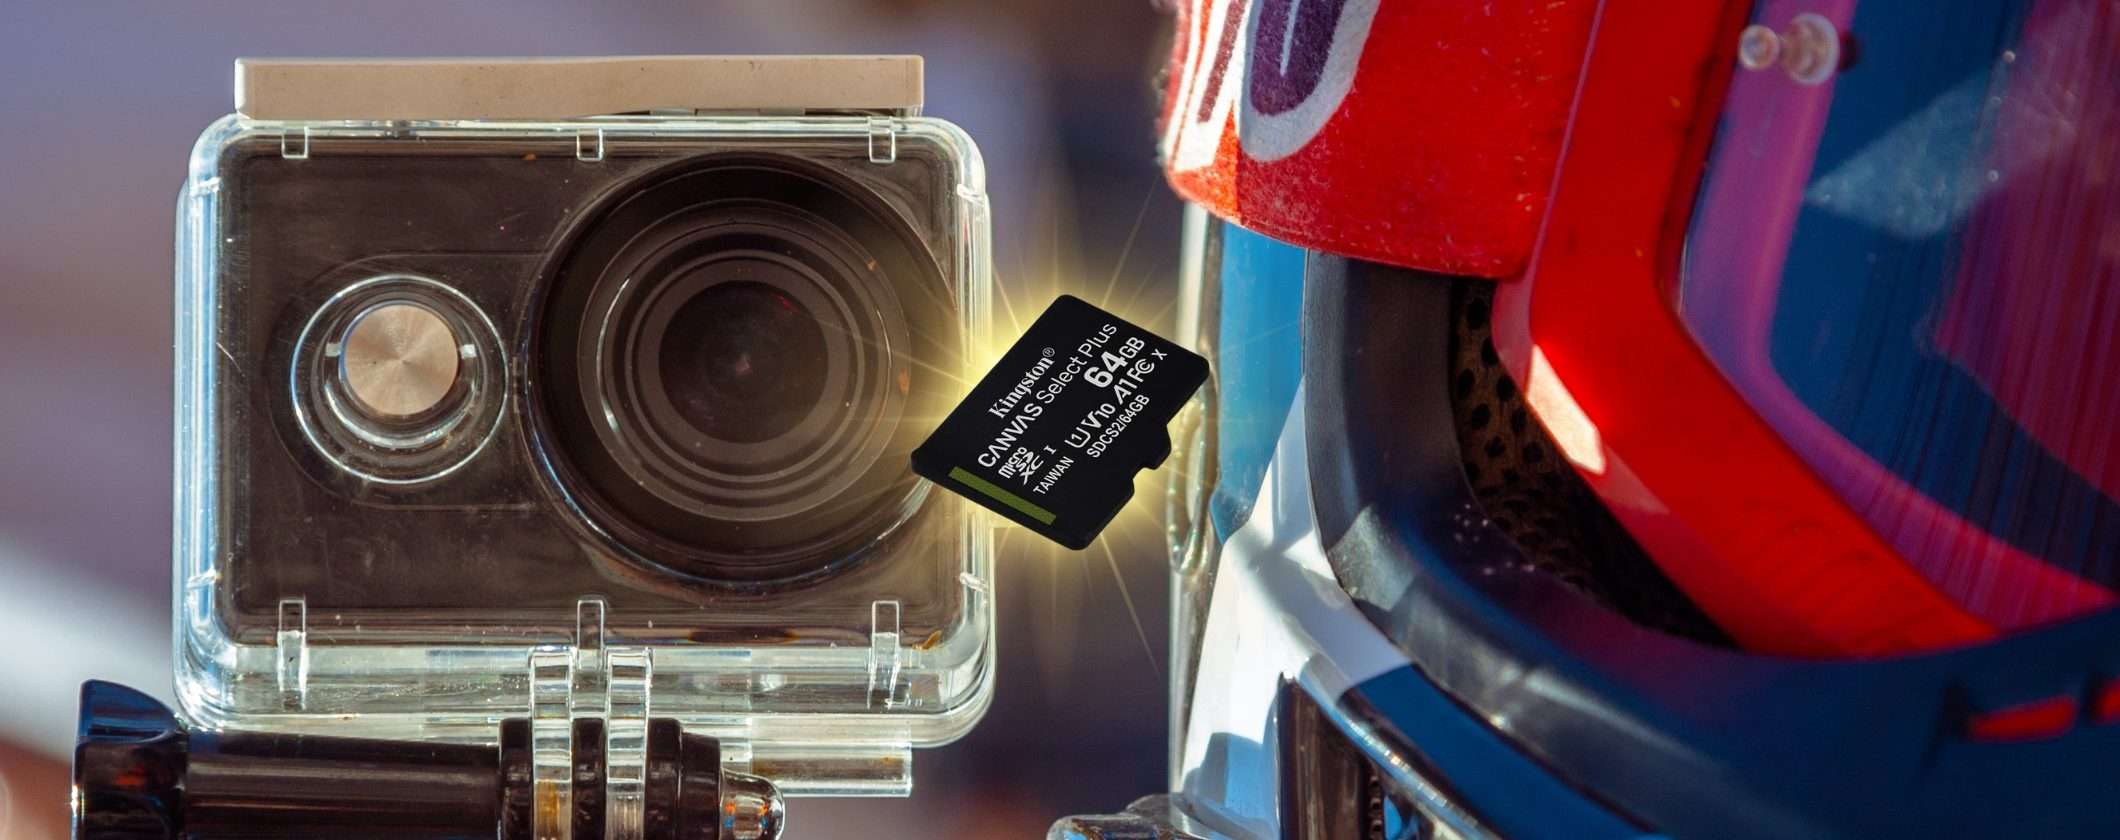 MicroSD Kingston 64GB: registra le tue uscite in moto (-40%)